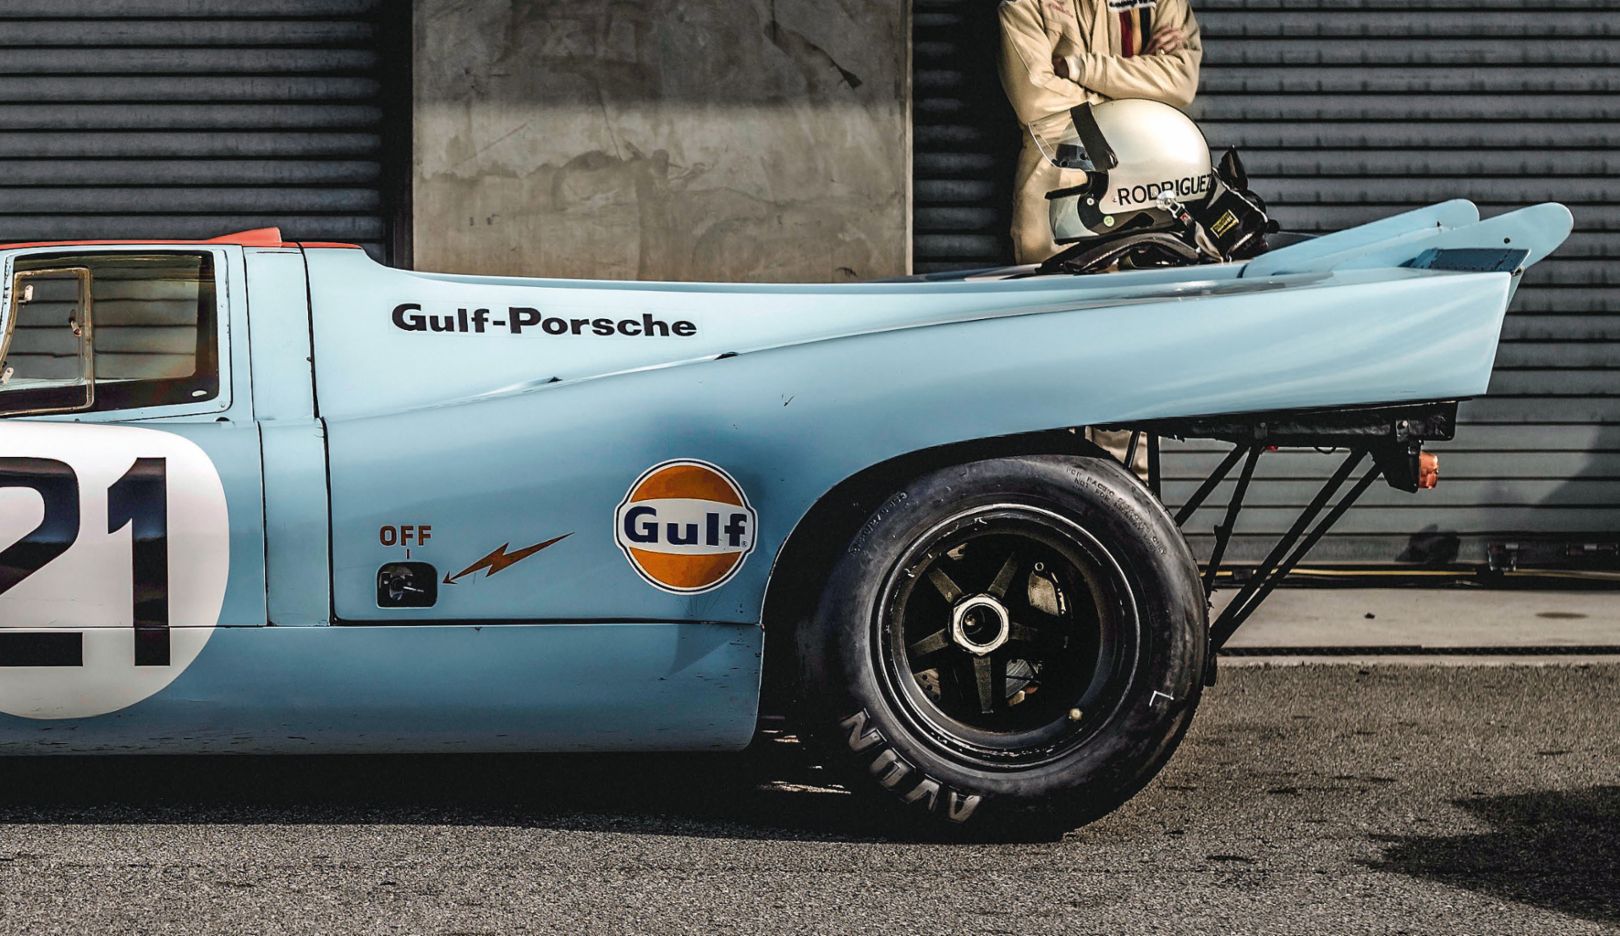 Na mosca! Uma de suas fotos favoritas – um Porsche 917, que Lotterer fotografou no Rennsport Reunion, na Califórnia: “Tudo estava perfeito – a luz, o pano de fundo, a atmosfera”